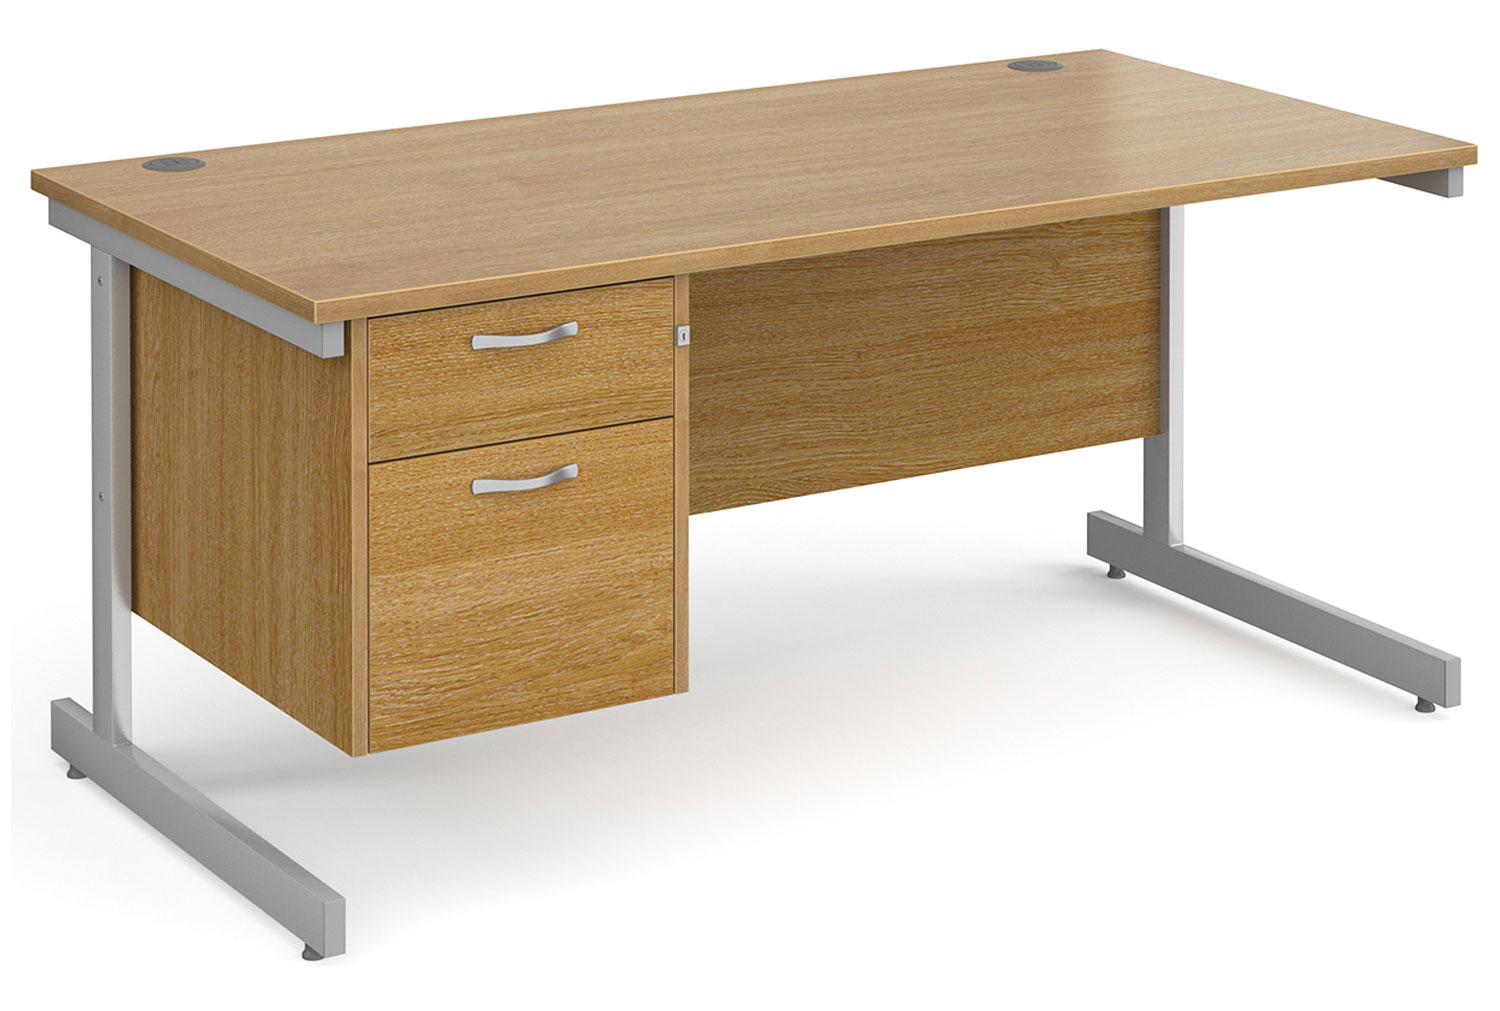 All Oak C-Leg Clerical Office Desk 2 Drawer, 160wx80dx73h (cm), Fully Installed